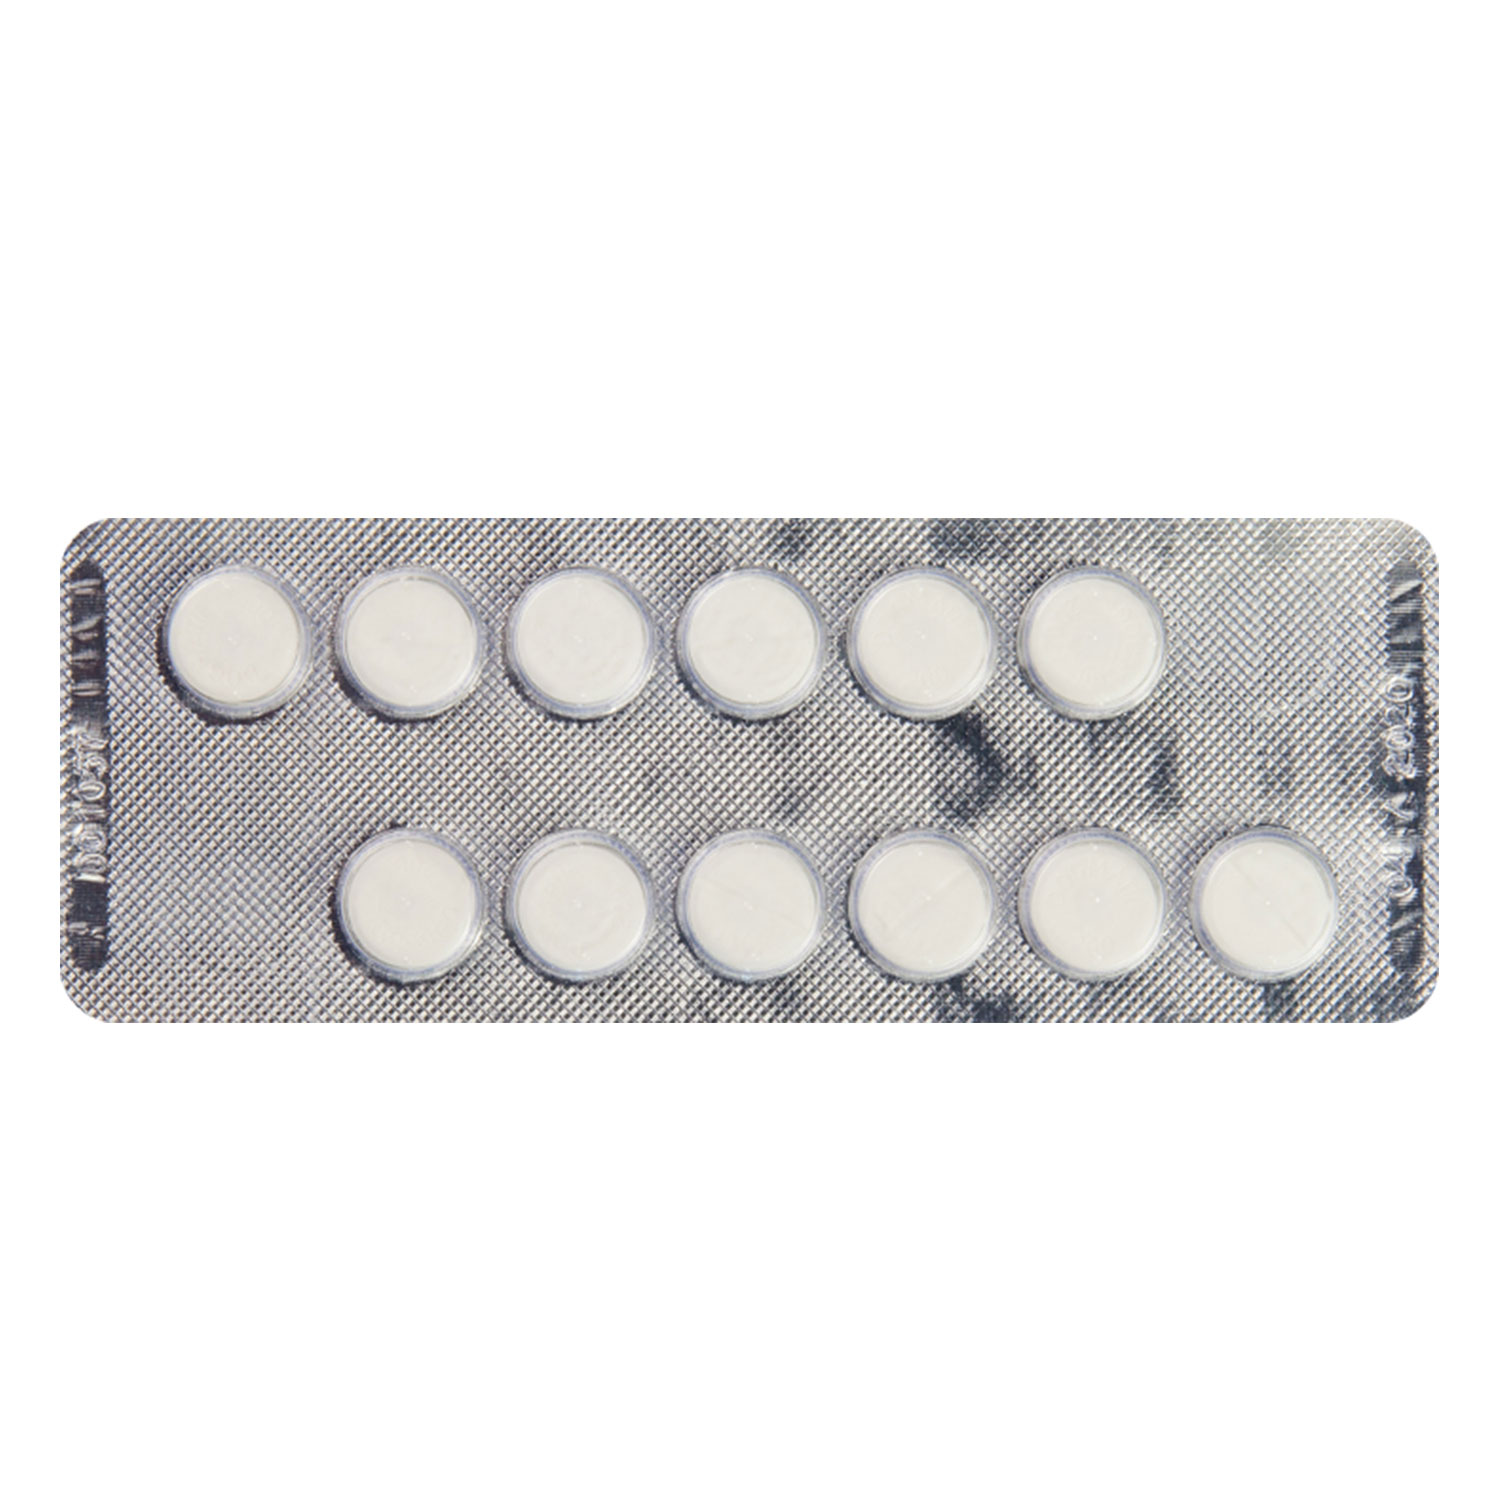 ドグマチール0mg スルピリド 通販 統合失調症 抗うつ剤 効果 口コミ 副作用 用法用量 ユニドラ